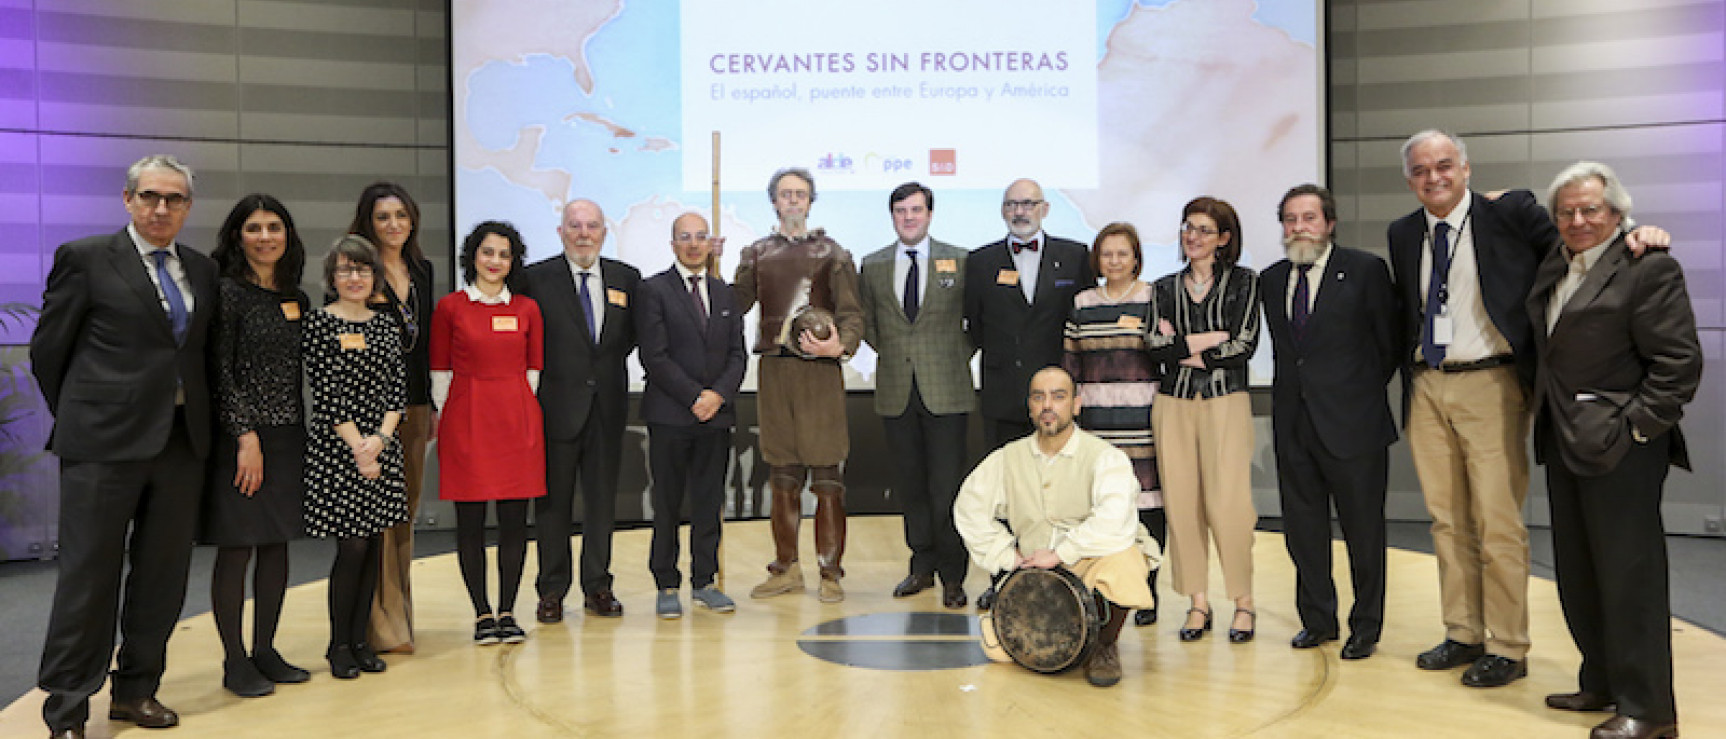 Participantes en el homenaje a Cervantes celebrado en Bruselas. Foto: Bernal Revert. 